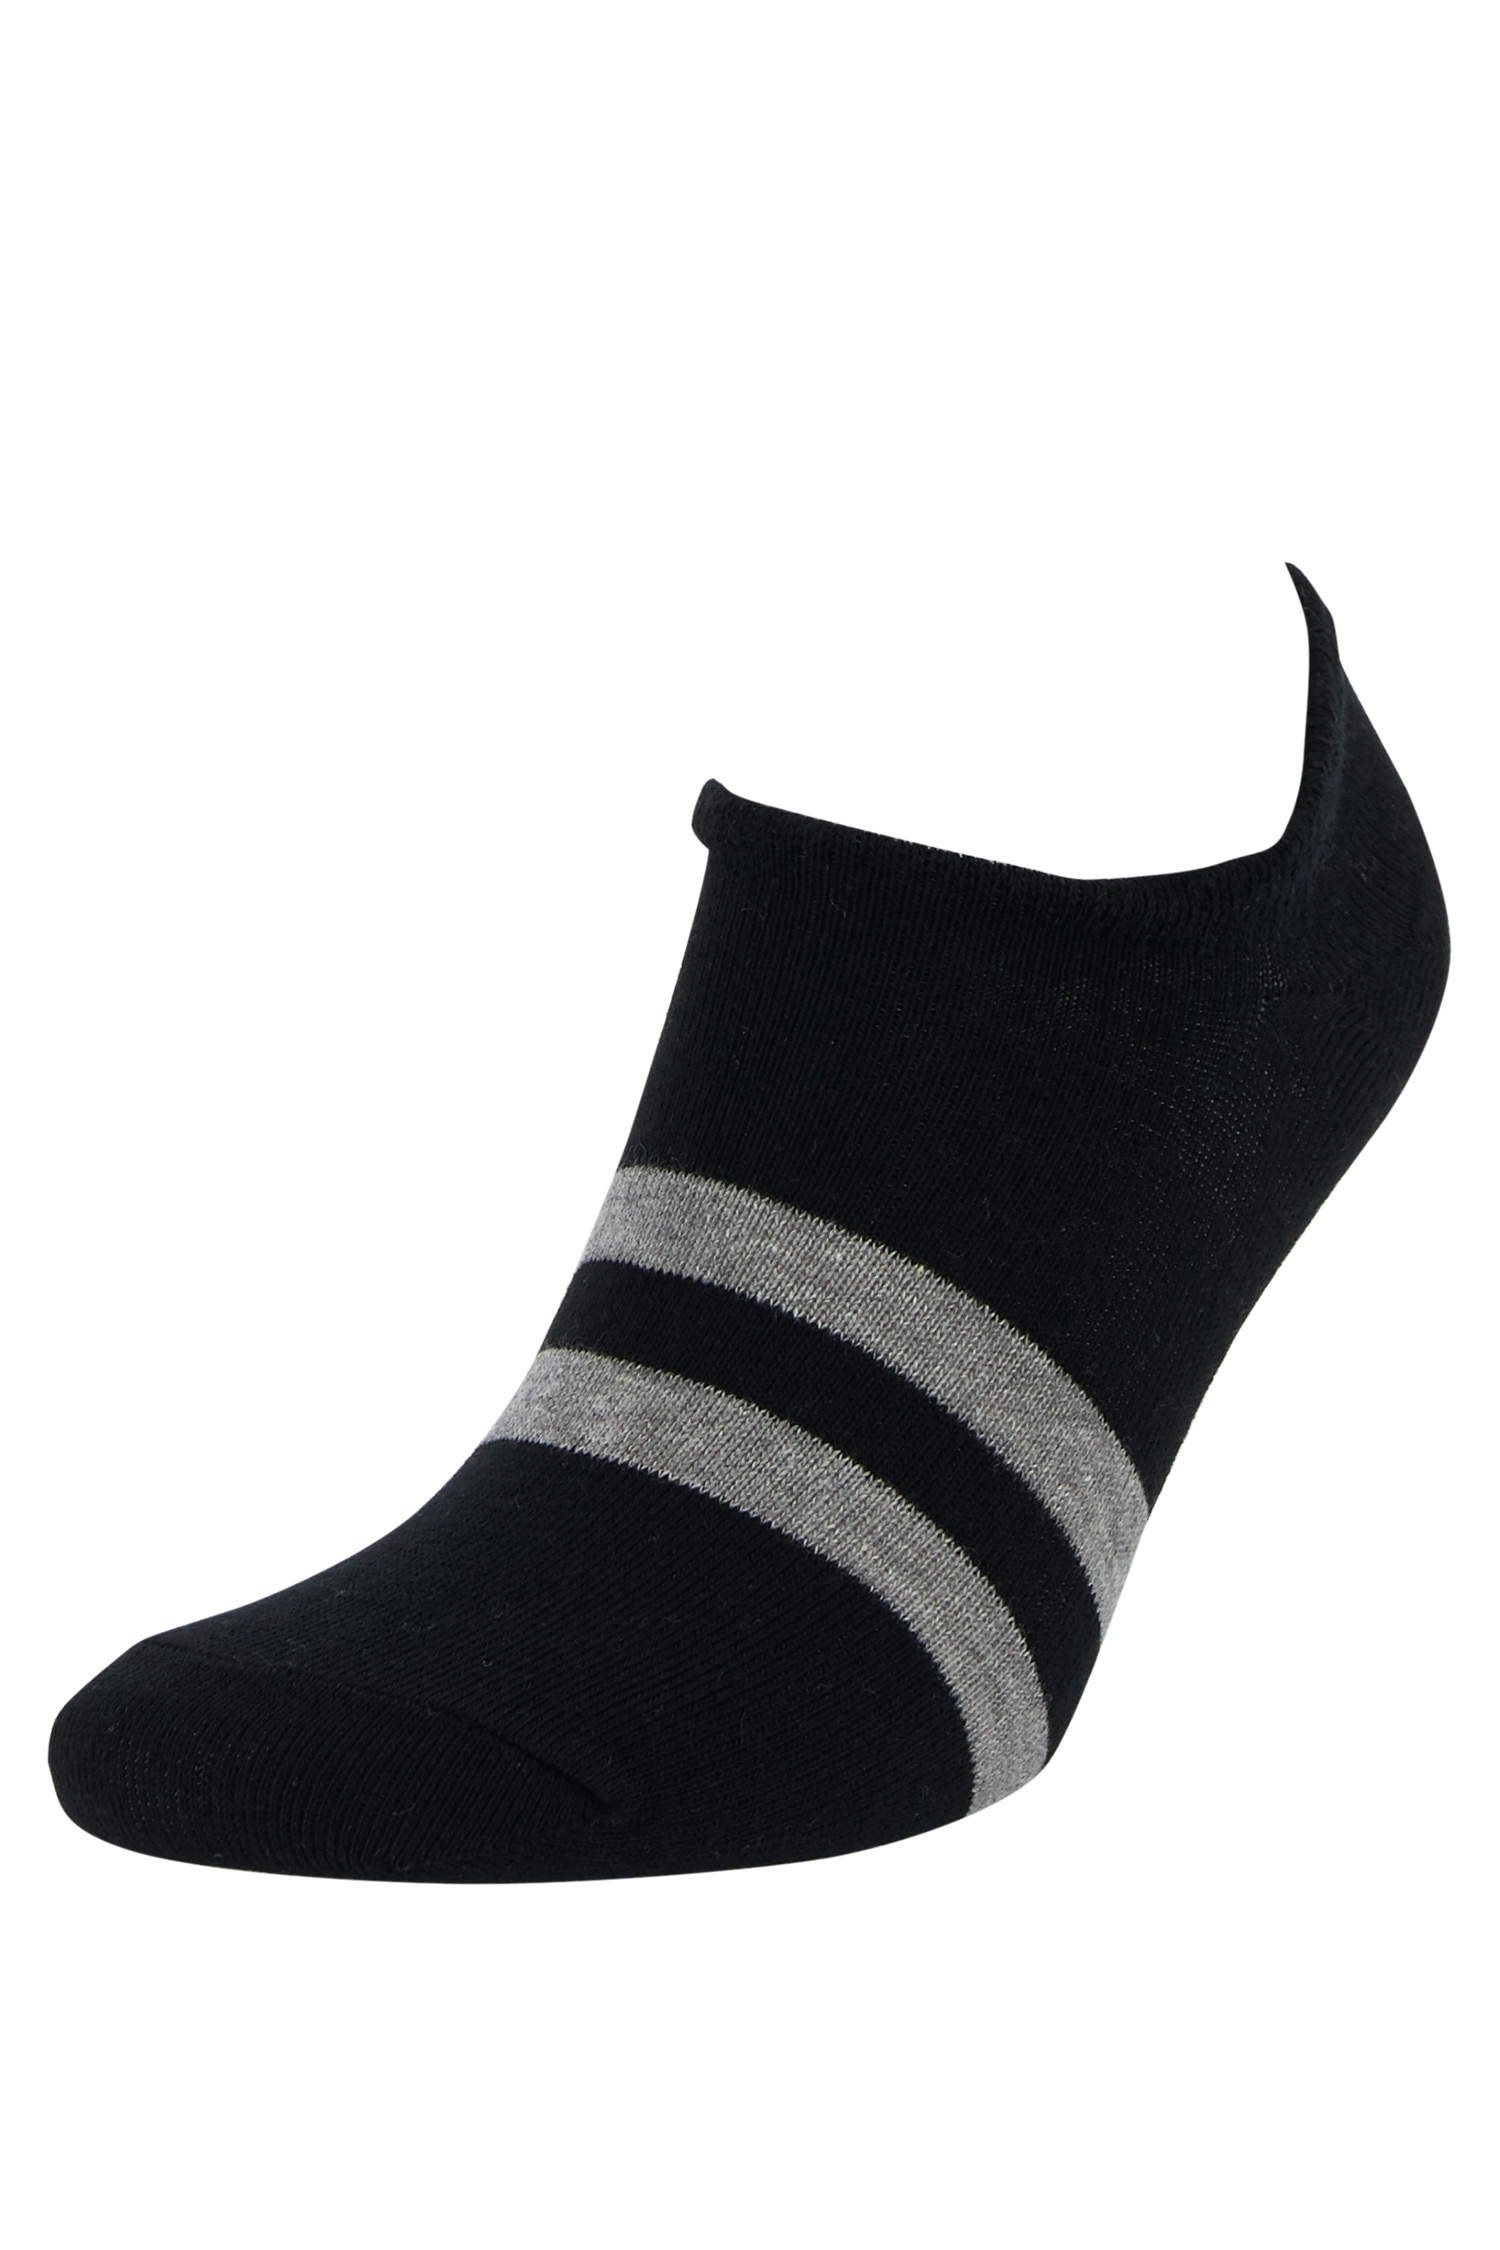 Defacto Renk Bloklu 5'li Patik Çorap. 1